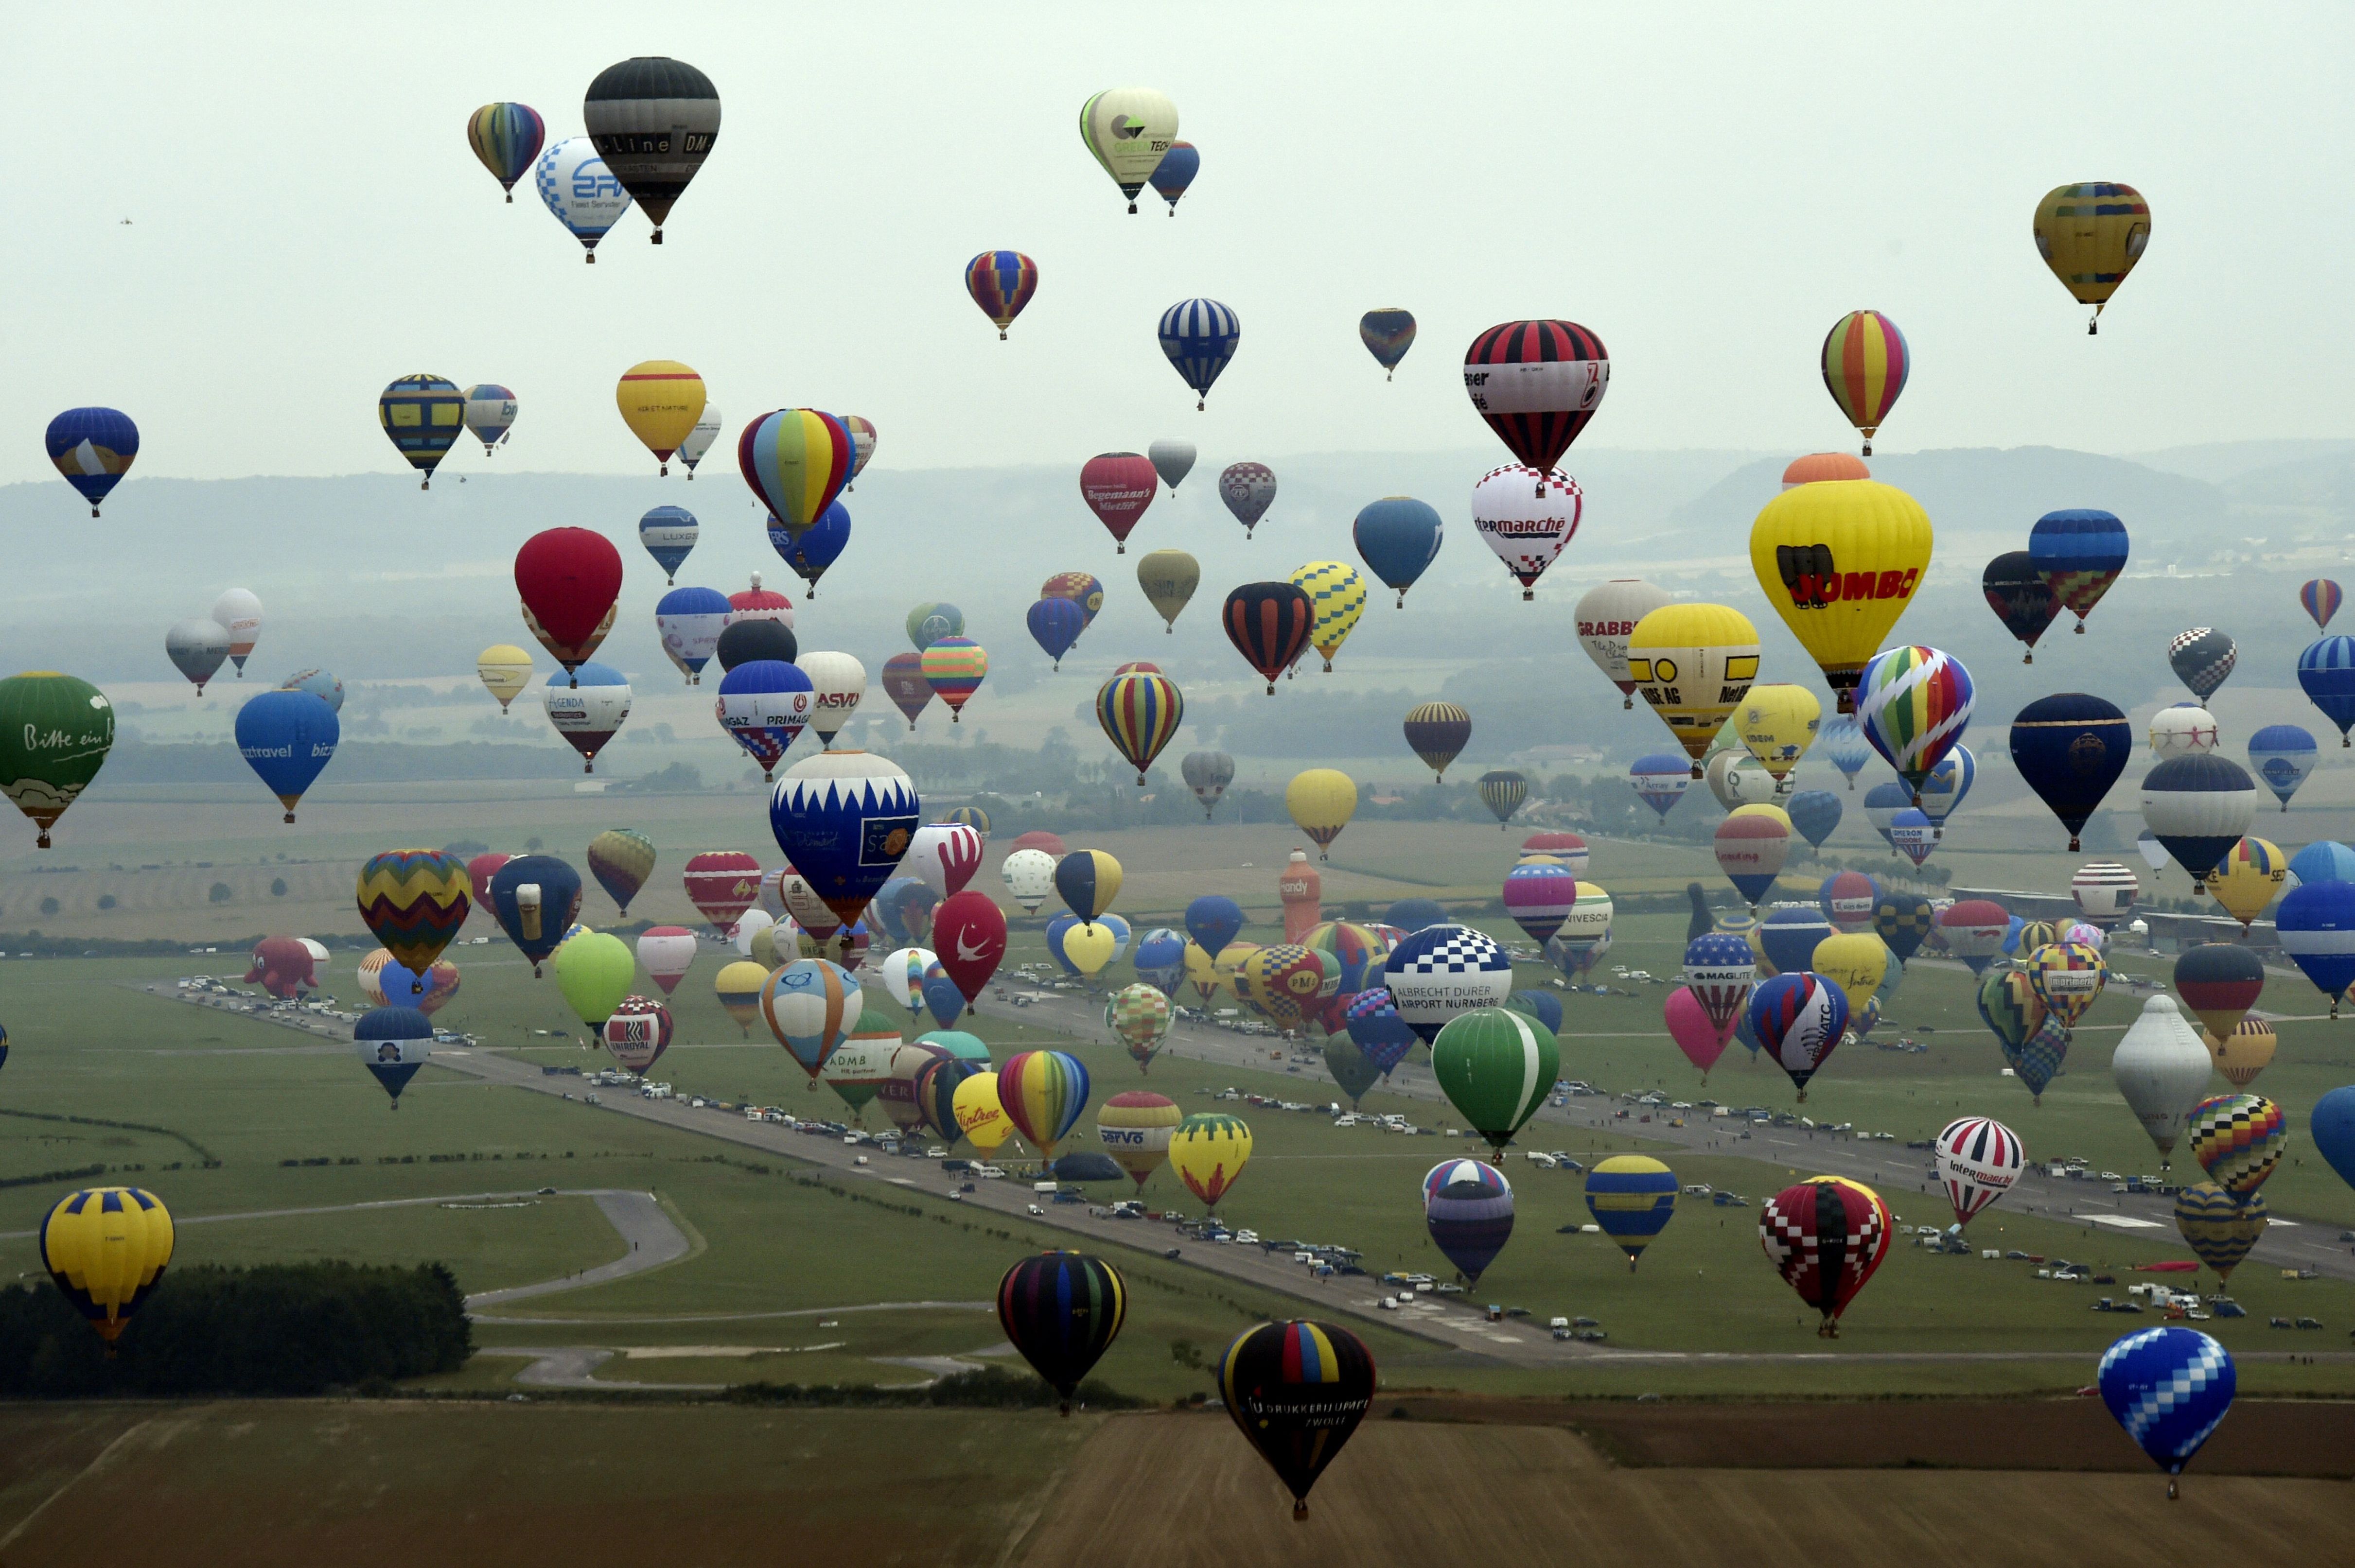 Гонка на воздушных шарах. Фестиваль воздушных шаров. Парад воздушных шаров. Воздушные шары аэростаты. Фестиваль воздушных шаров во Франции.